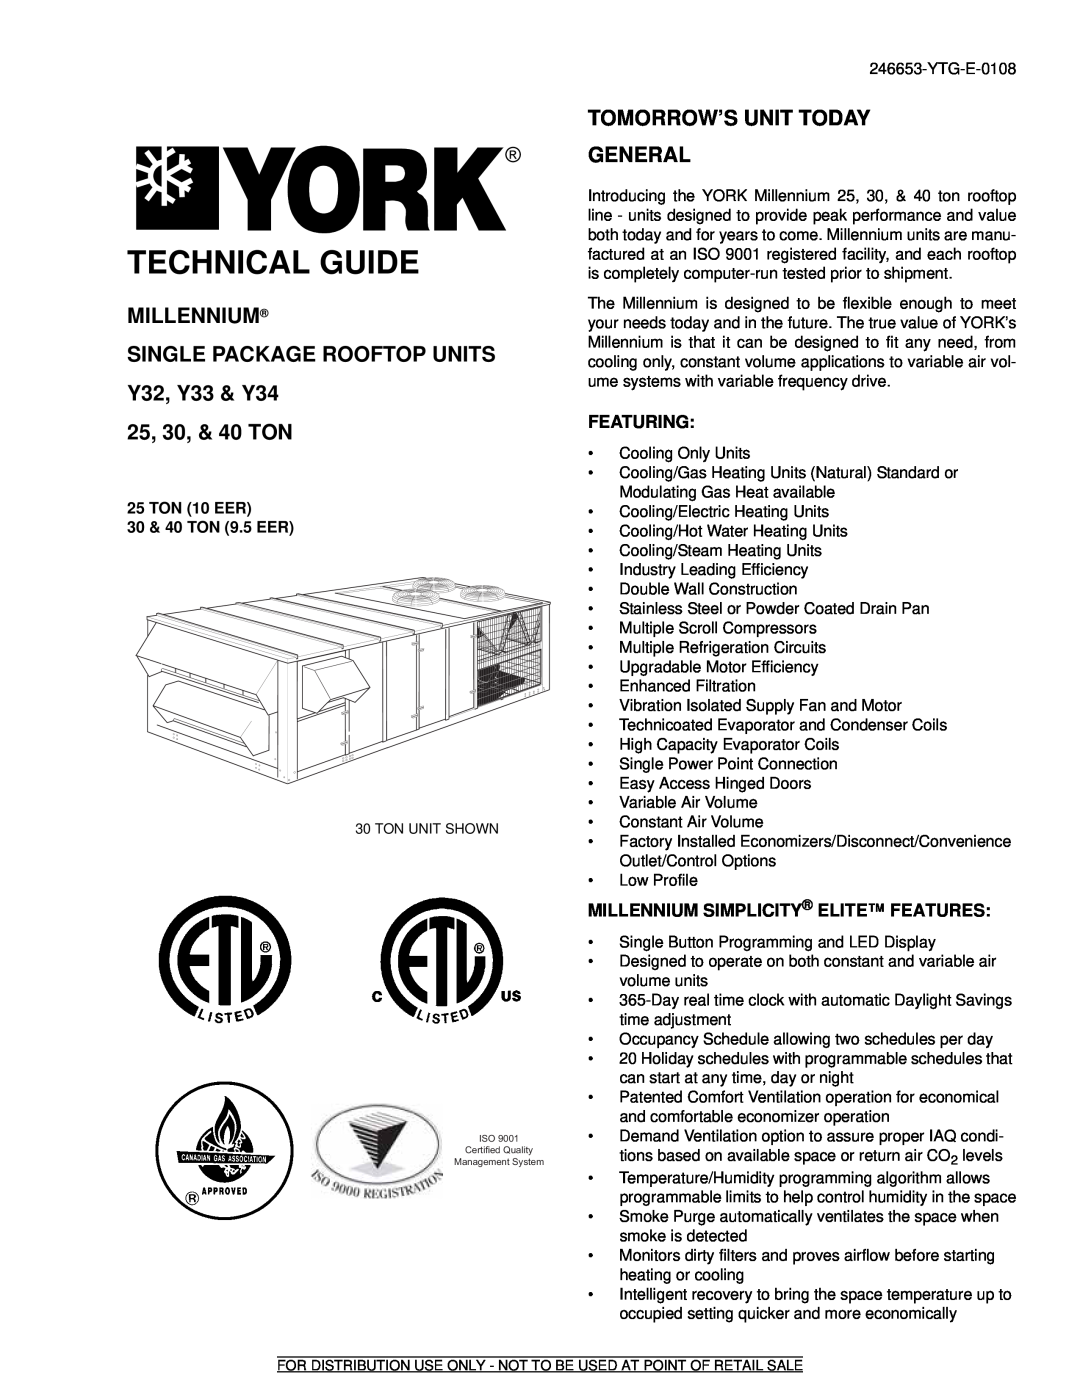 York manual Millennium Single Package Rooftop Units, Y32, Y33 & Y34 25, 30, & 40 TON, Tomorrow’S Unit Today General 